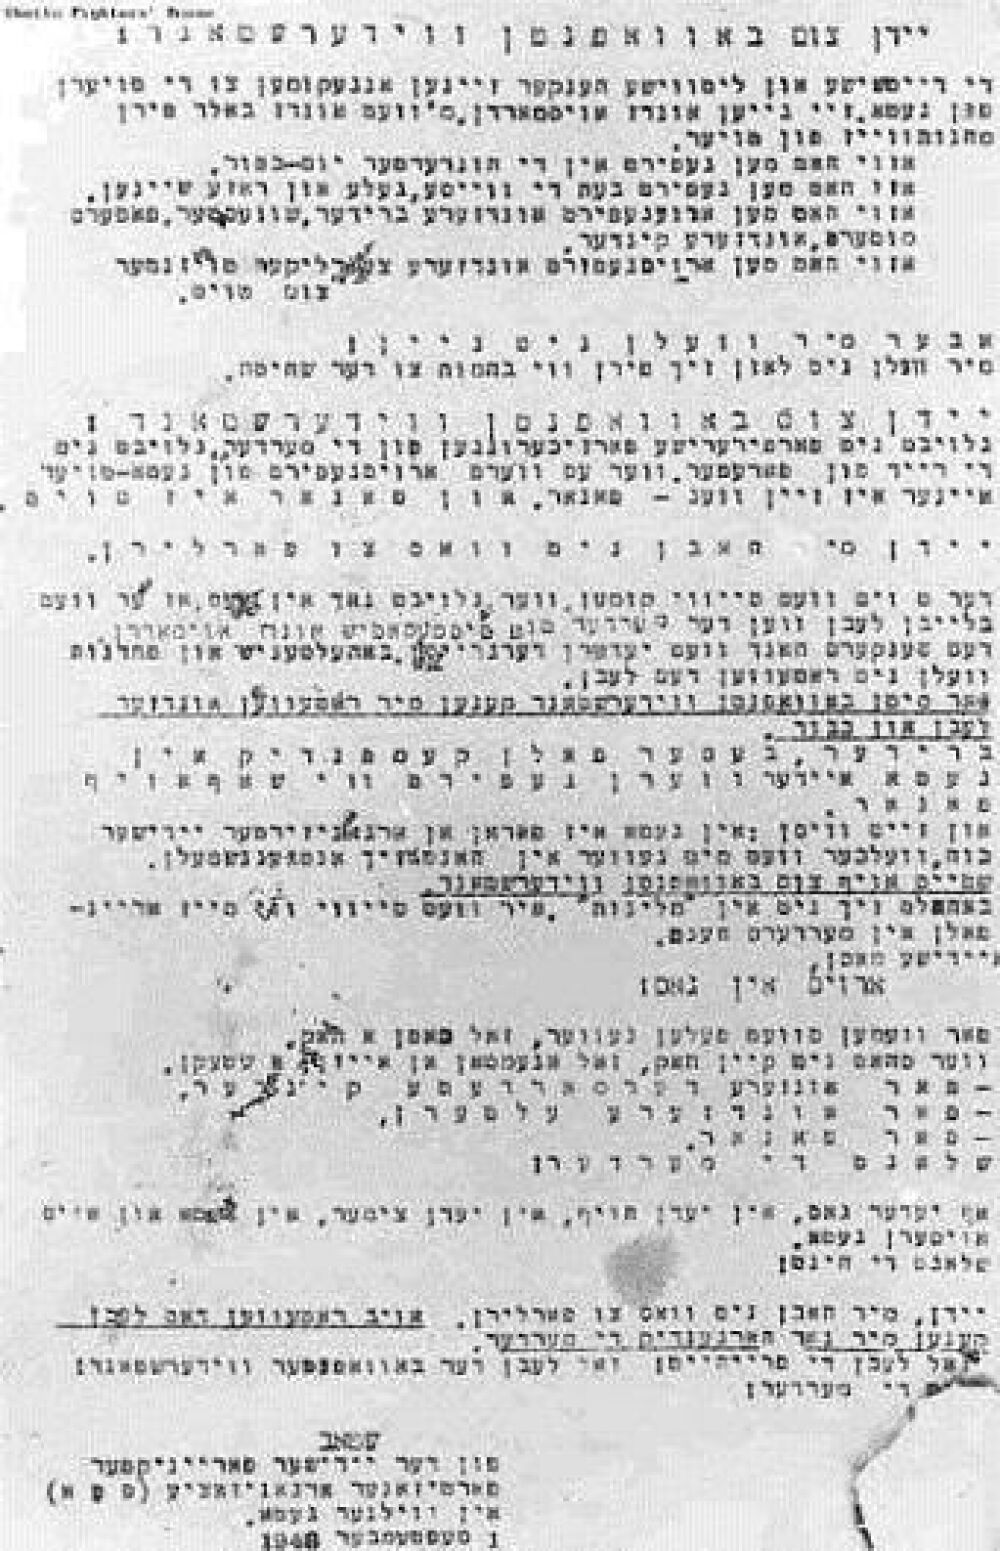 Der Aufruf der FPO vom 1. Juli 1943